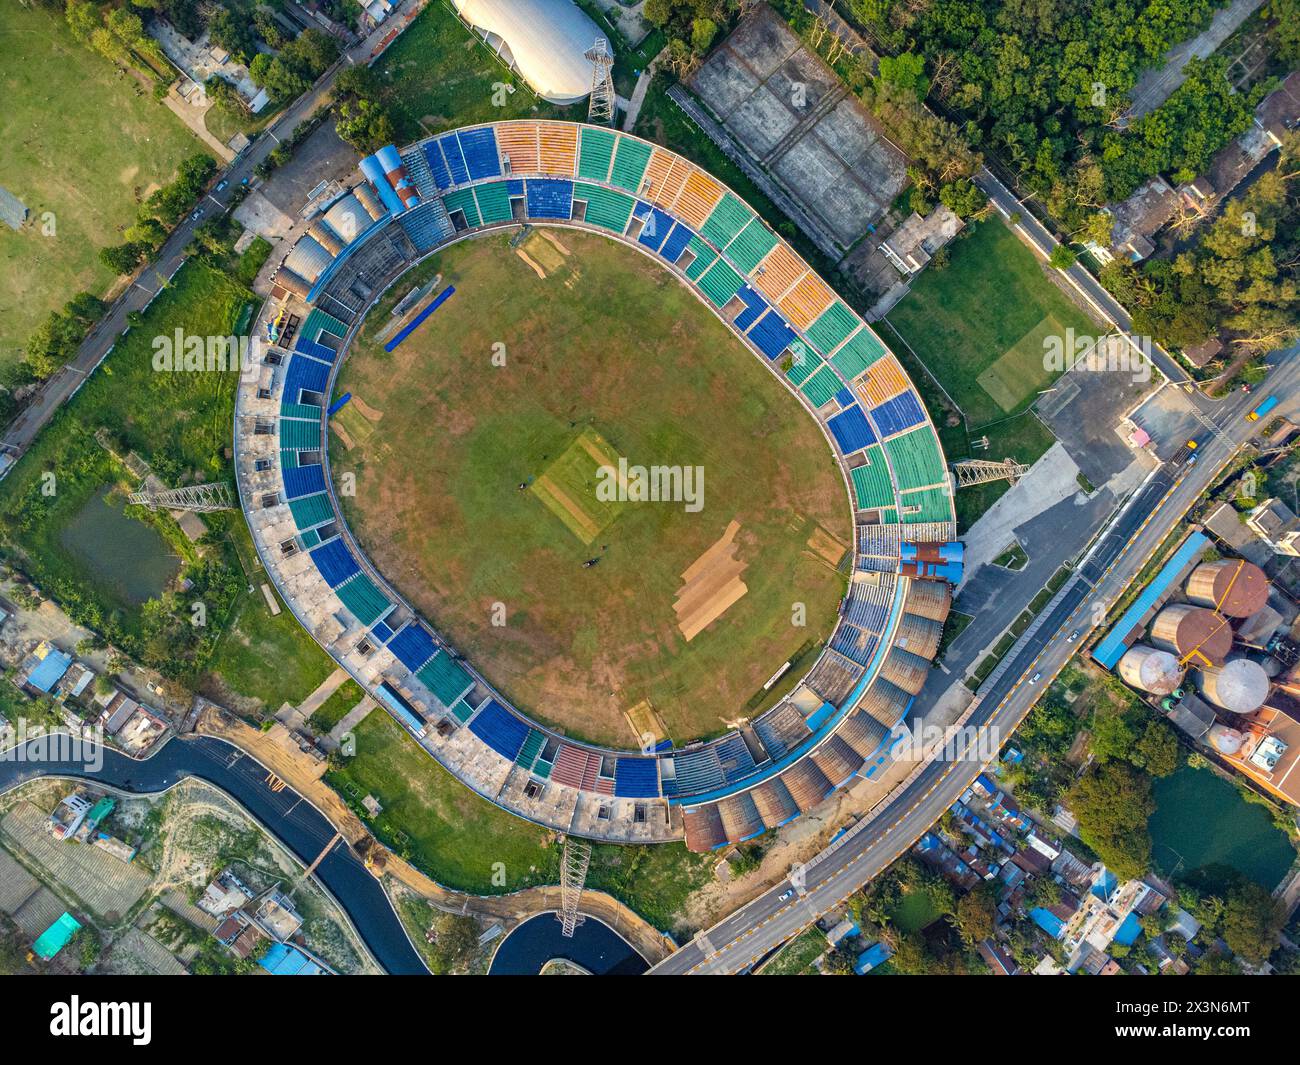 Das Zahur Ahmed Chowdhury Stadium ist eines der größten internationalen Cricketstadien in Chittagong, Bangladesch. Stockfoto